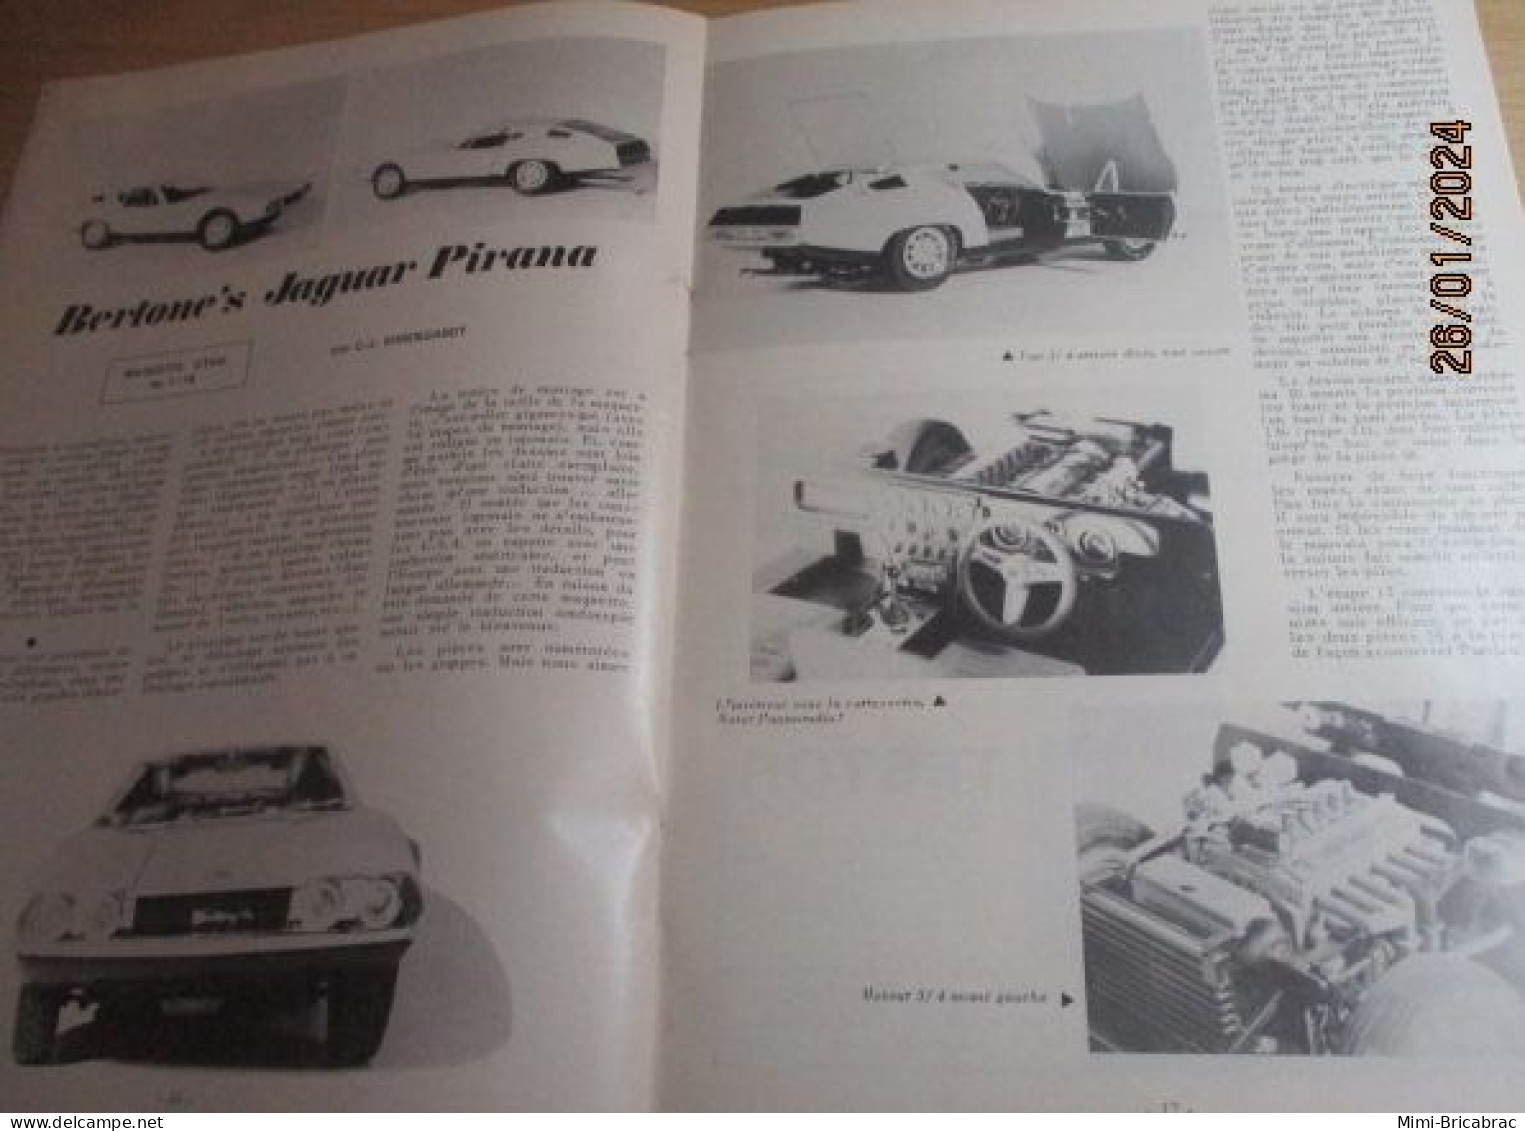 CAGI 1e Revue de maquettisme plastique années 60/70 : MPM n°26 de 1973 très bon état ! Sommaire en photo 2 ou 3